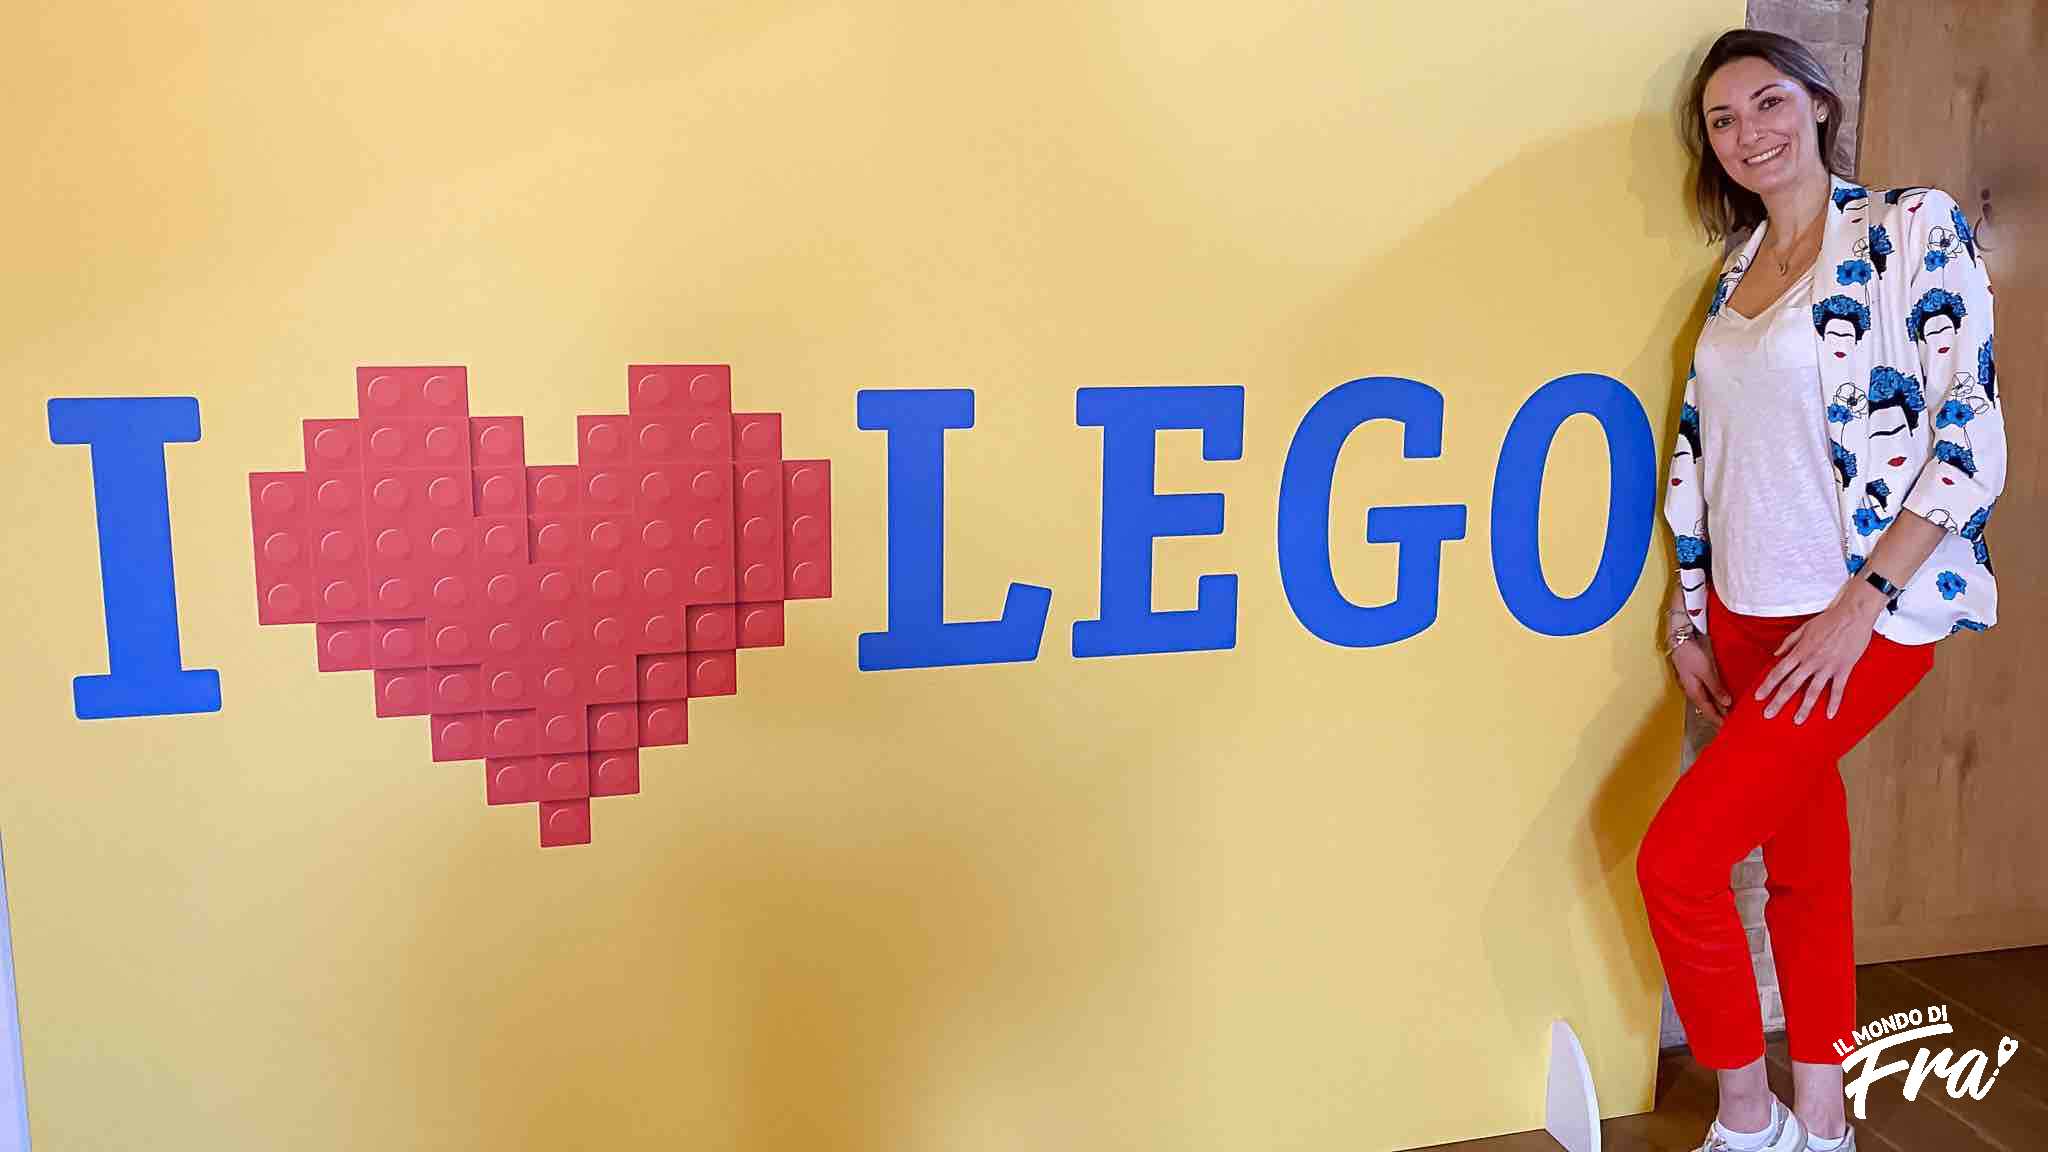 Monza, in Villa Reale I Love Lego: la mostra dei mattoncini più famosi  del mondo - MBNews